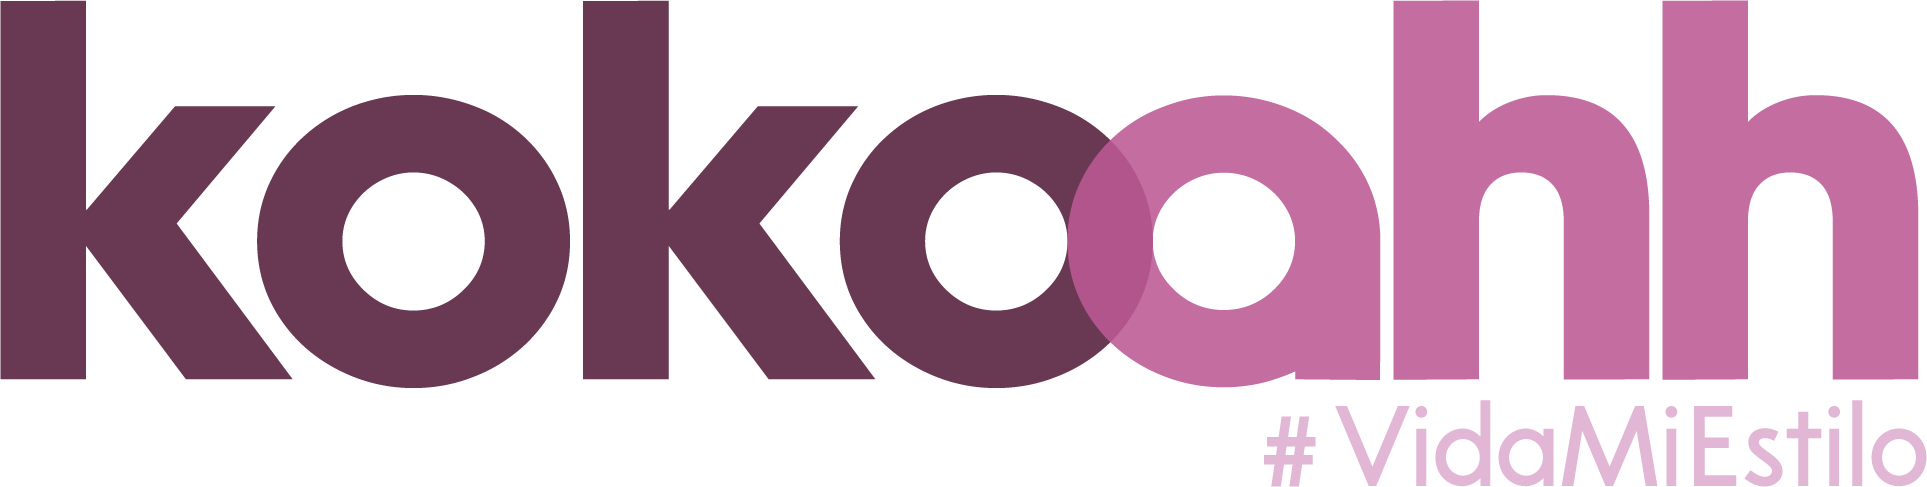 kokoahh.com